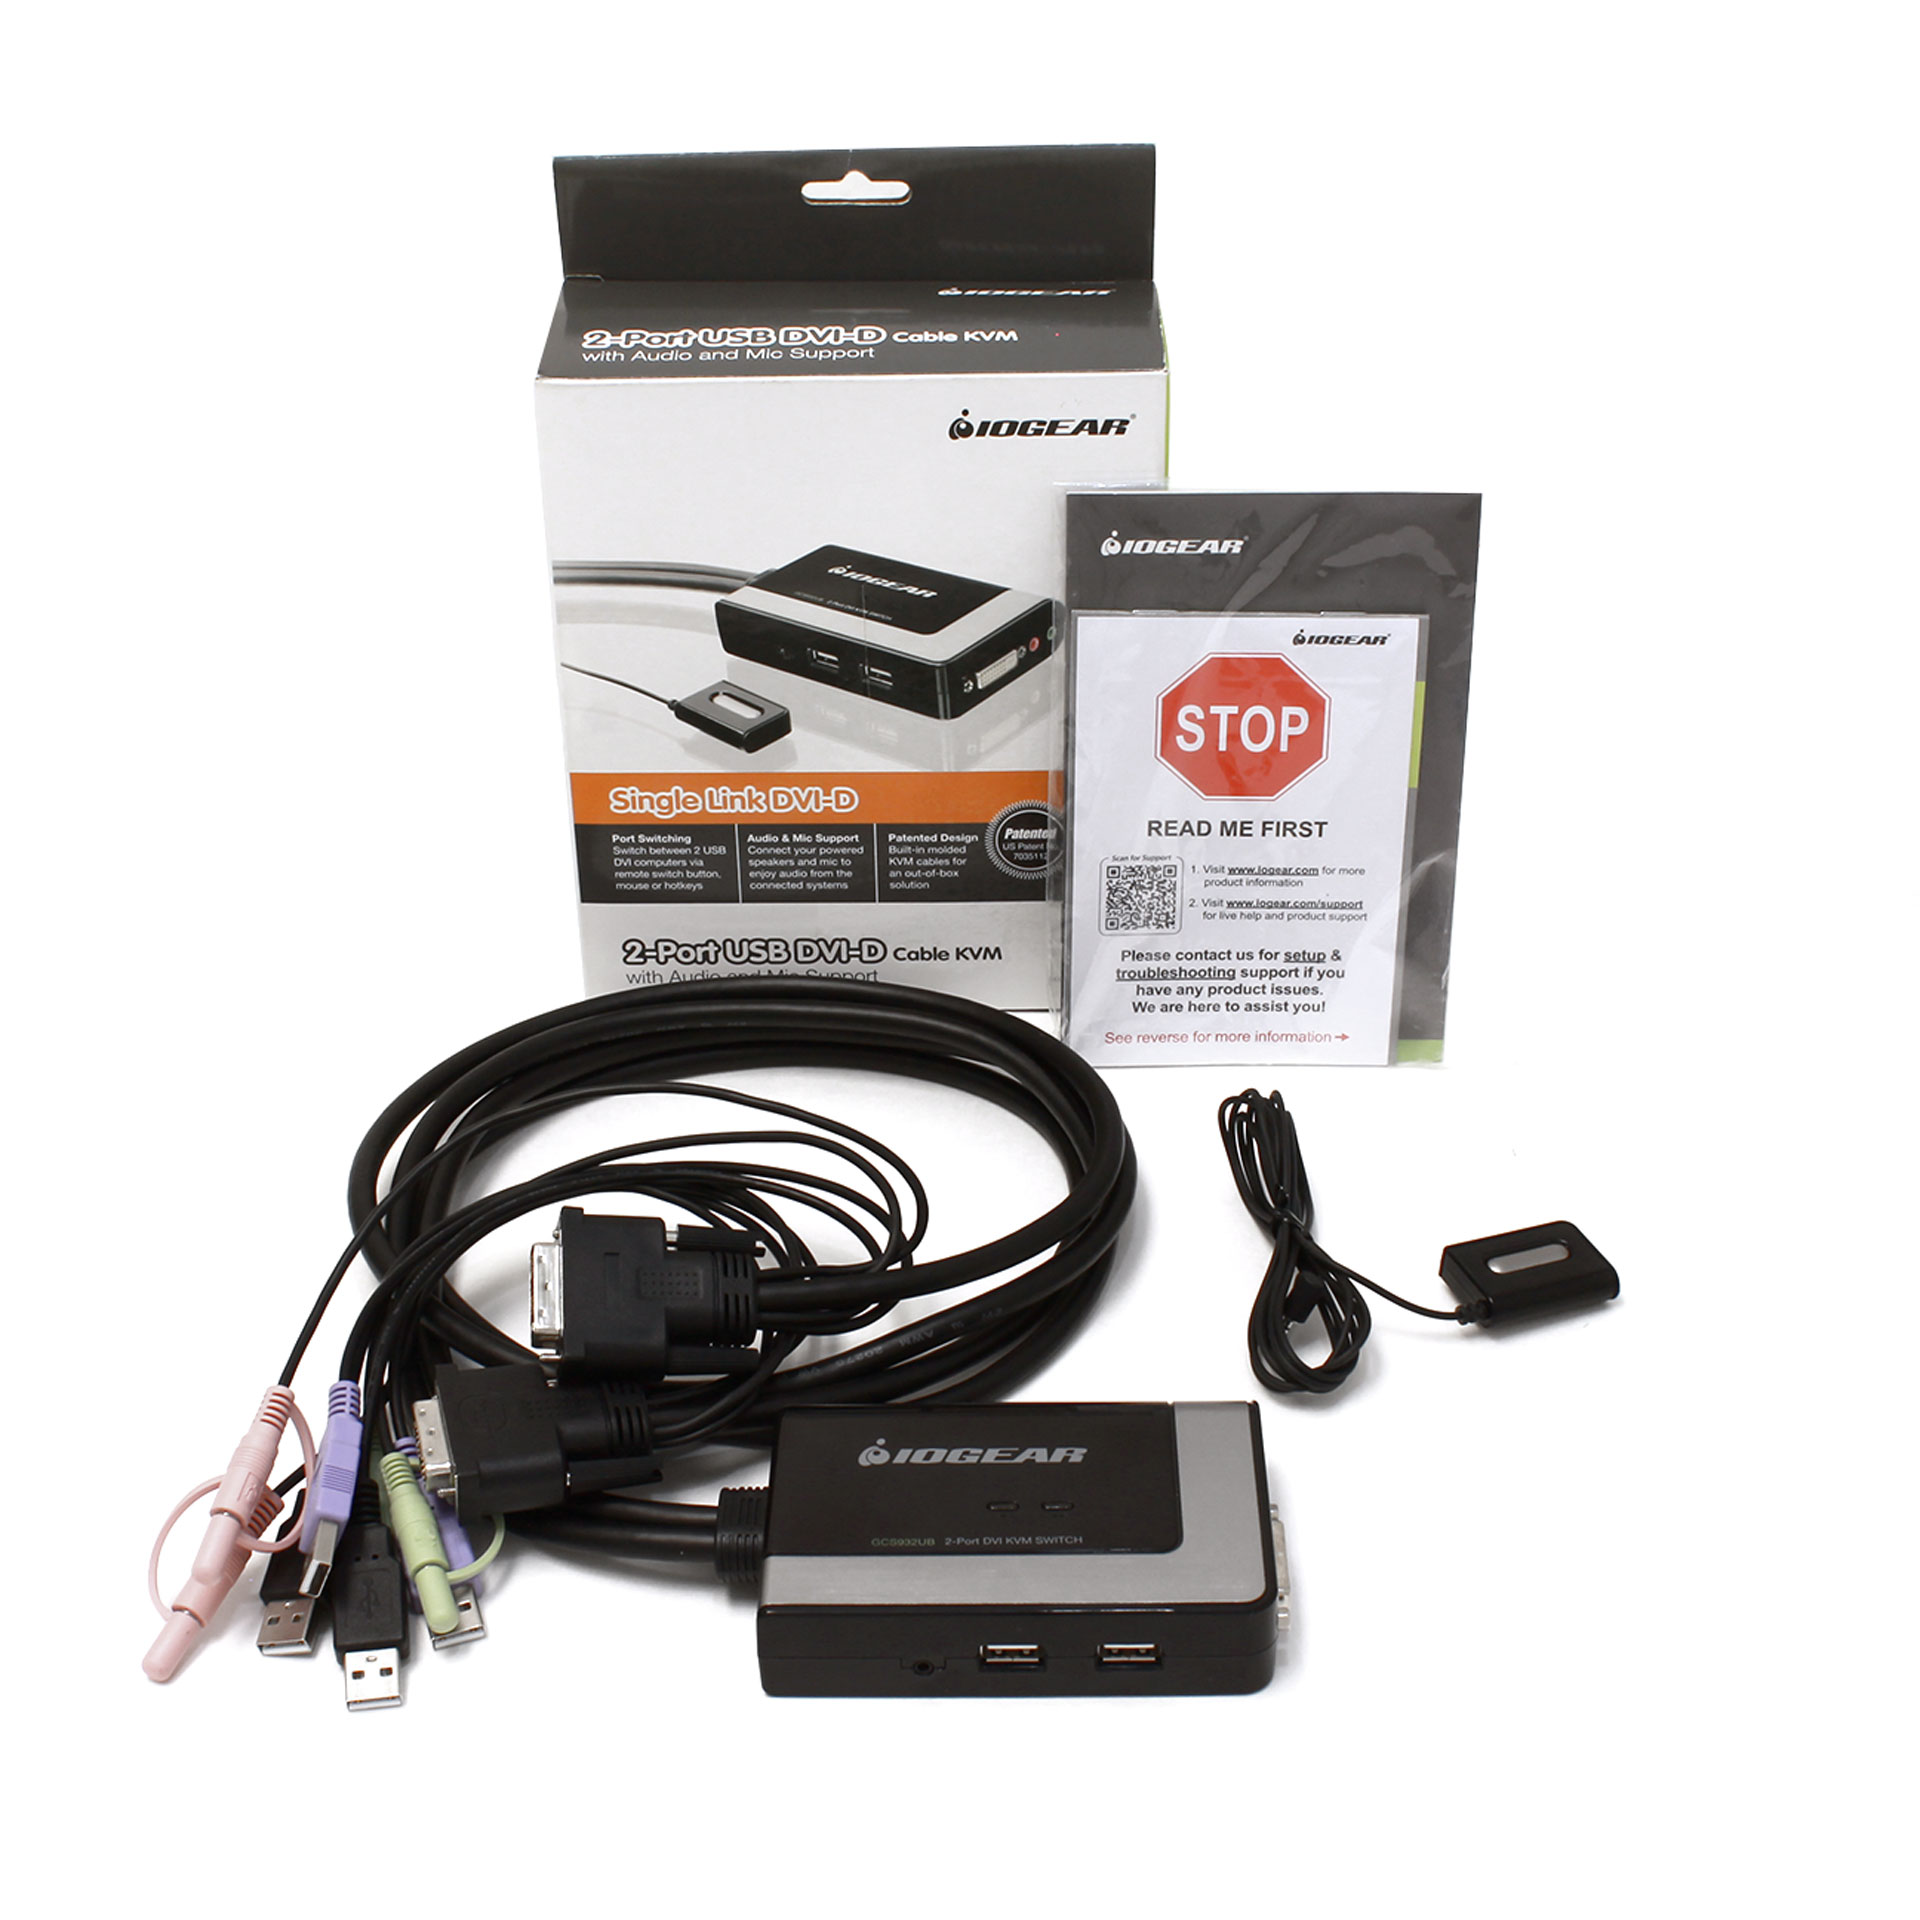 Iogear Micro USB DVI-D KVM with Audio and Cables 2-Port GCS932UB